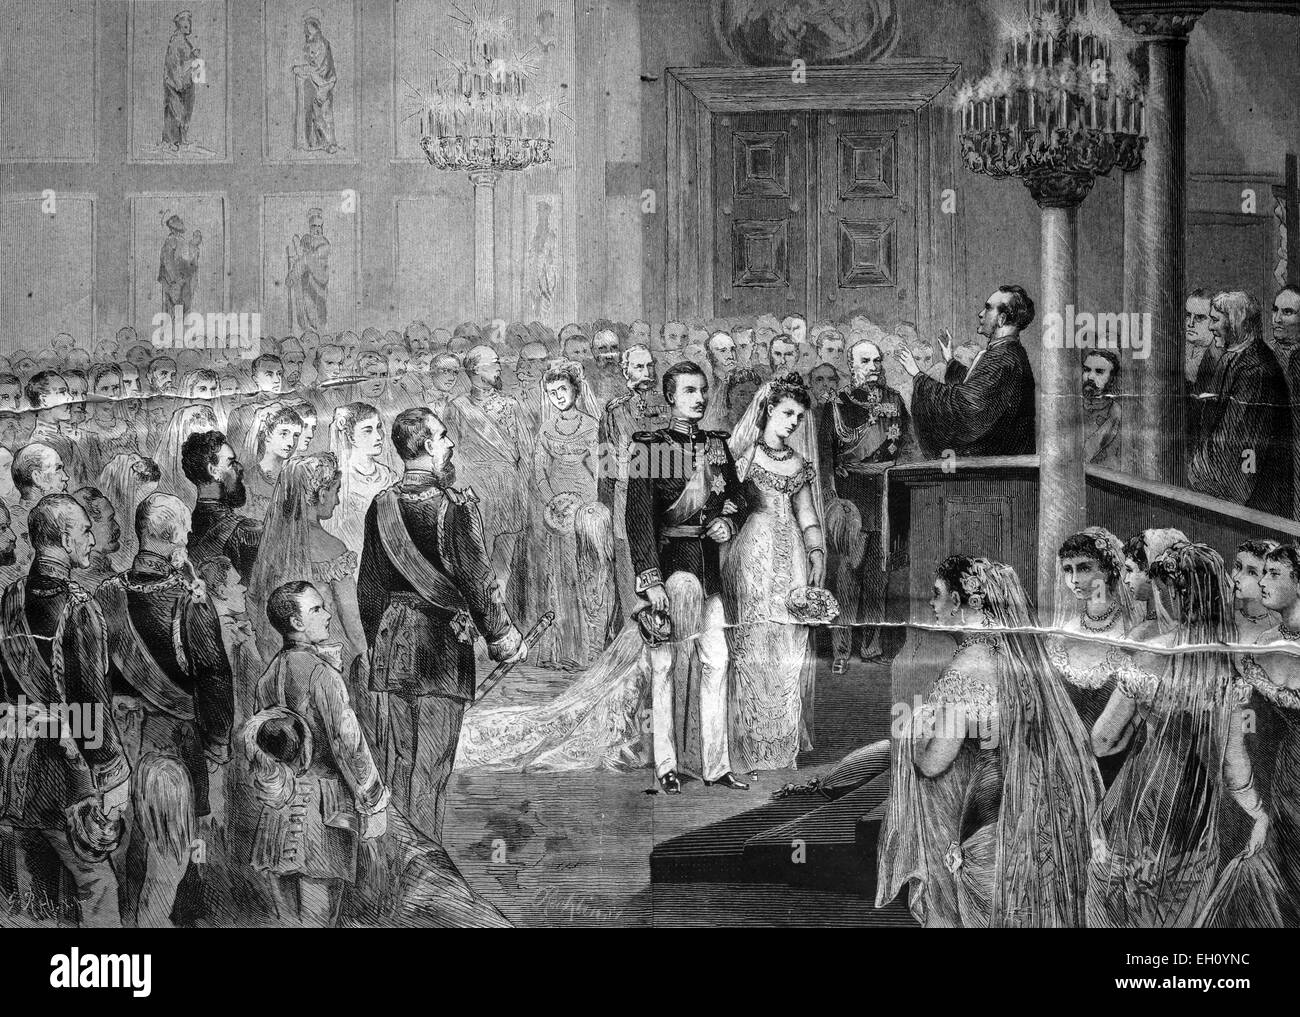 Mariage du Prince Guillaume de Prusse et de la princesse Augusta Victoria de Schleswig-Holstein à Berlin, 1881, illustration historique, vers 1886 Banque D'Images